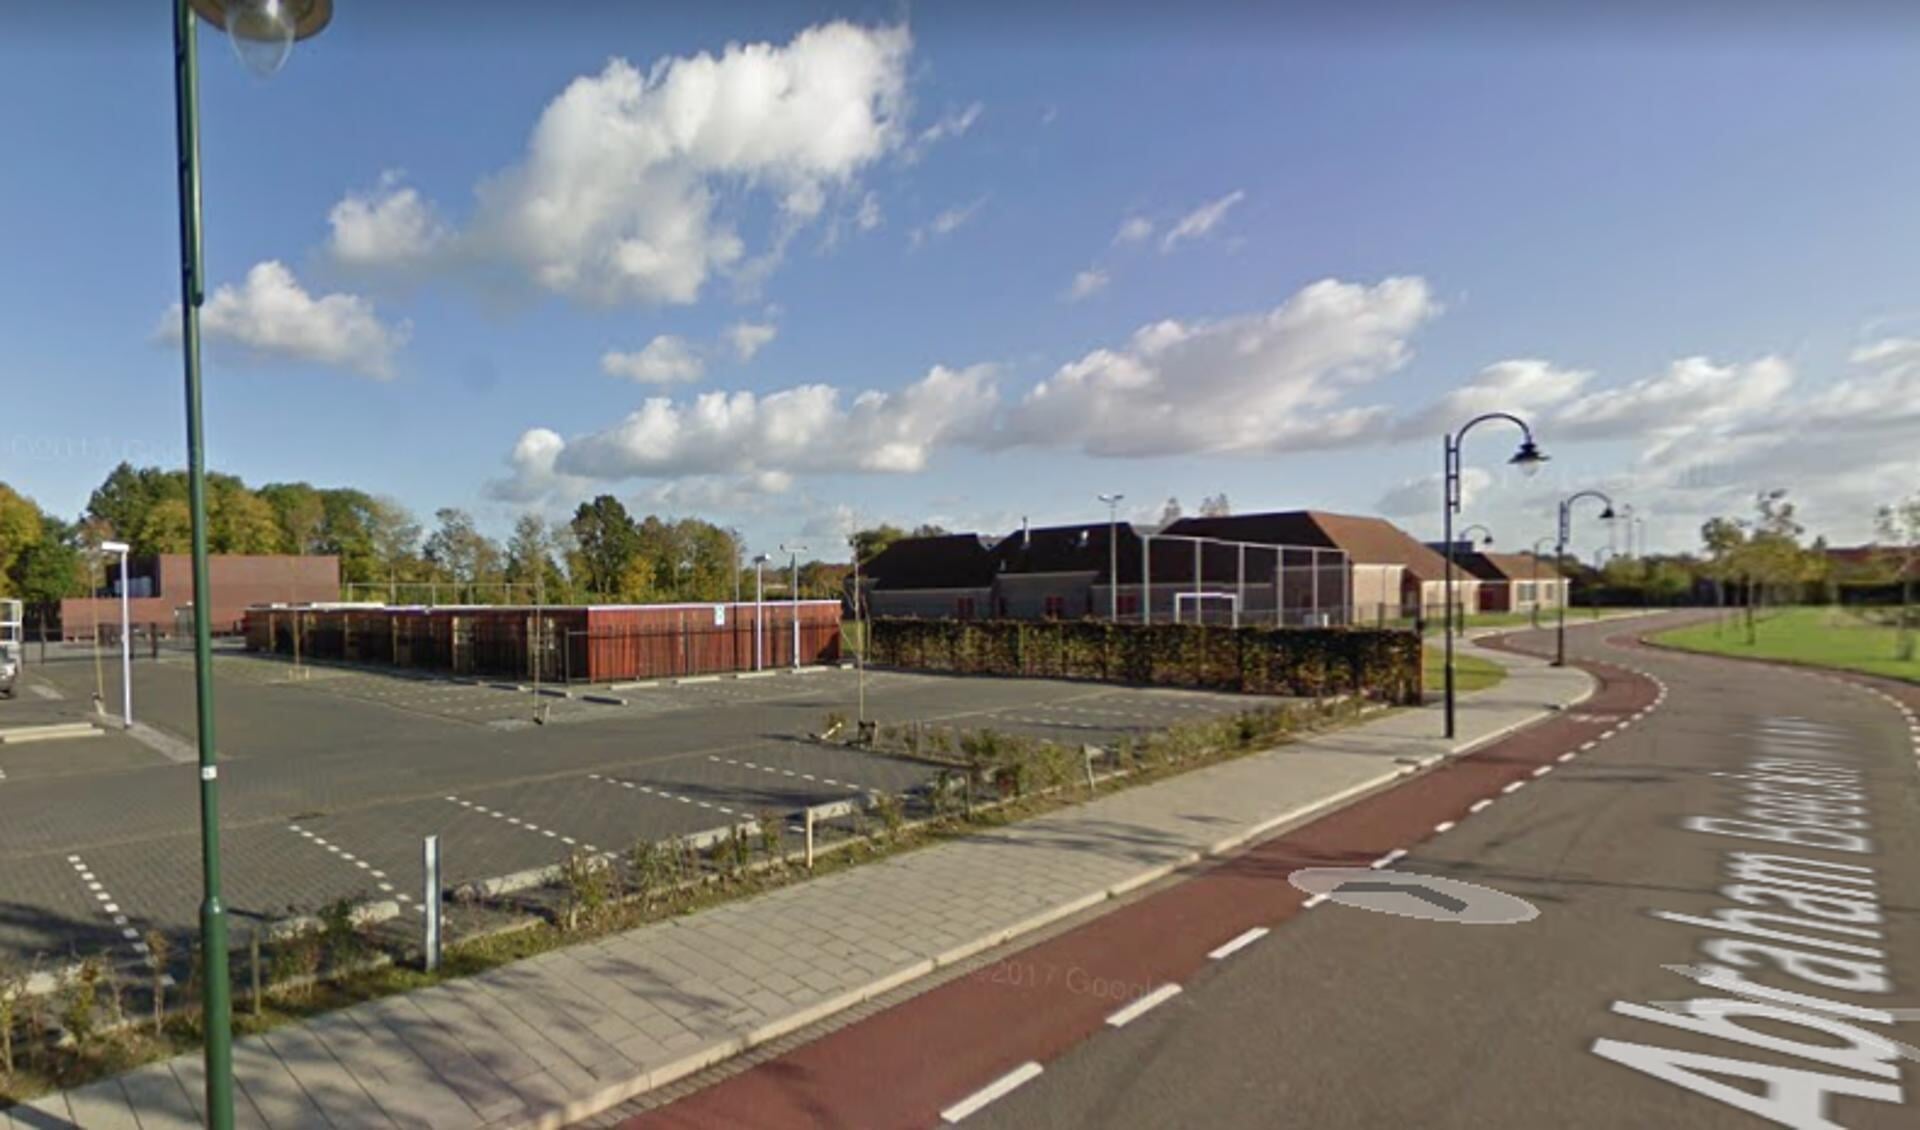 Knulst wil dat het gebied dat onder het Masterplan Tholen valt, rookvrij wordt. Daar horen het Westerpoortcollege, Meulviet, de (eventuele) toekomstige speeltuin, het zwembad en sportvelden van Tholense Boys bij. (Foto: Google Maps.) 